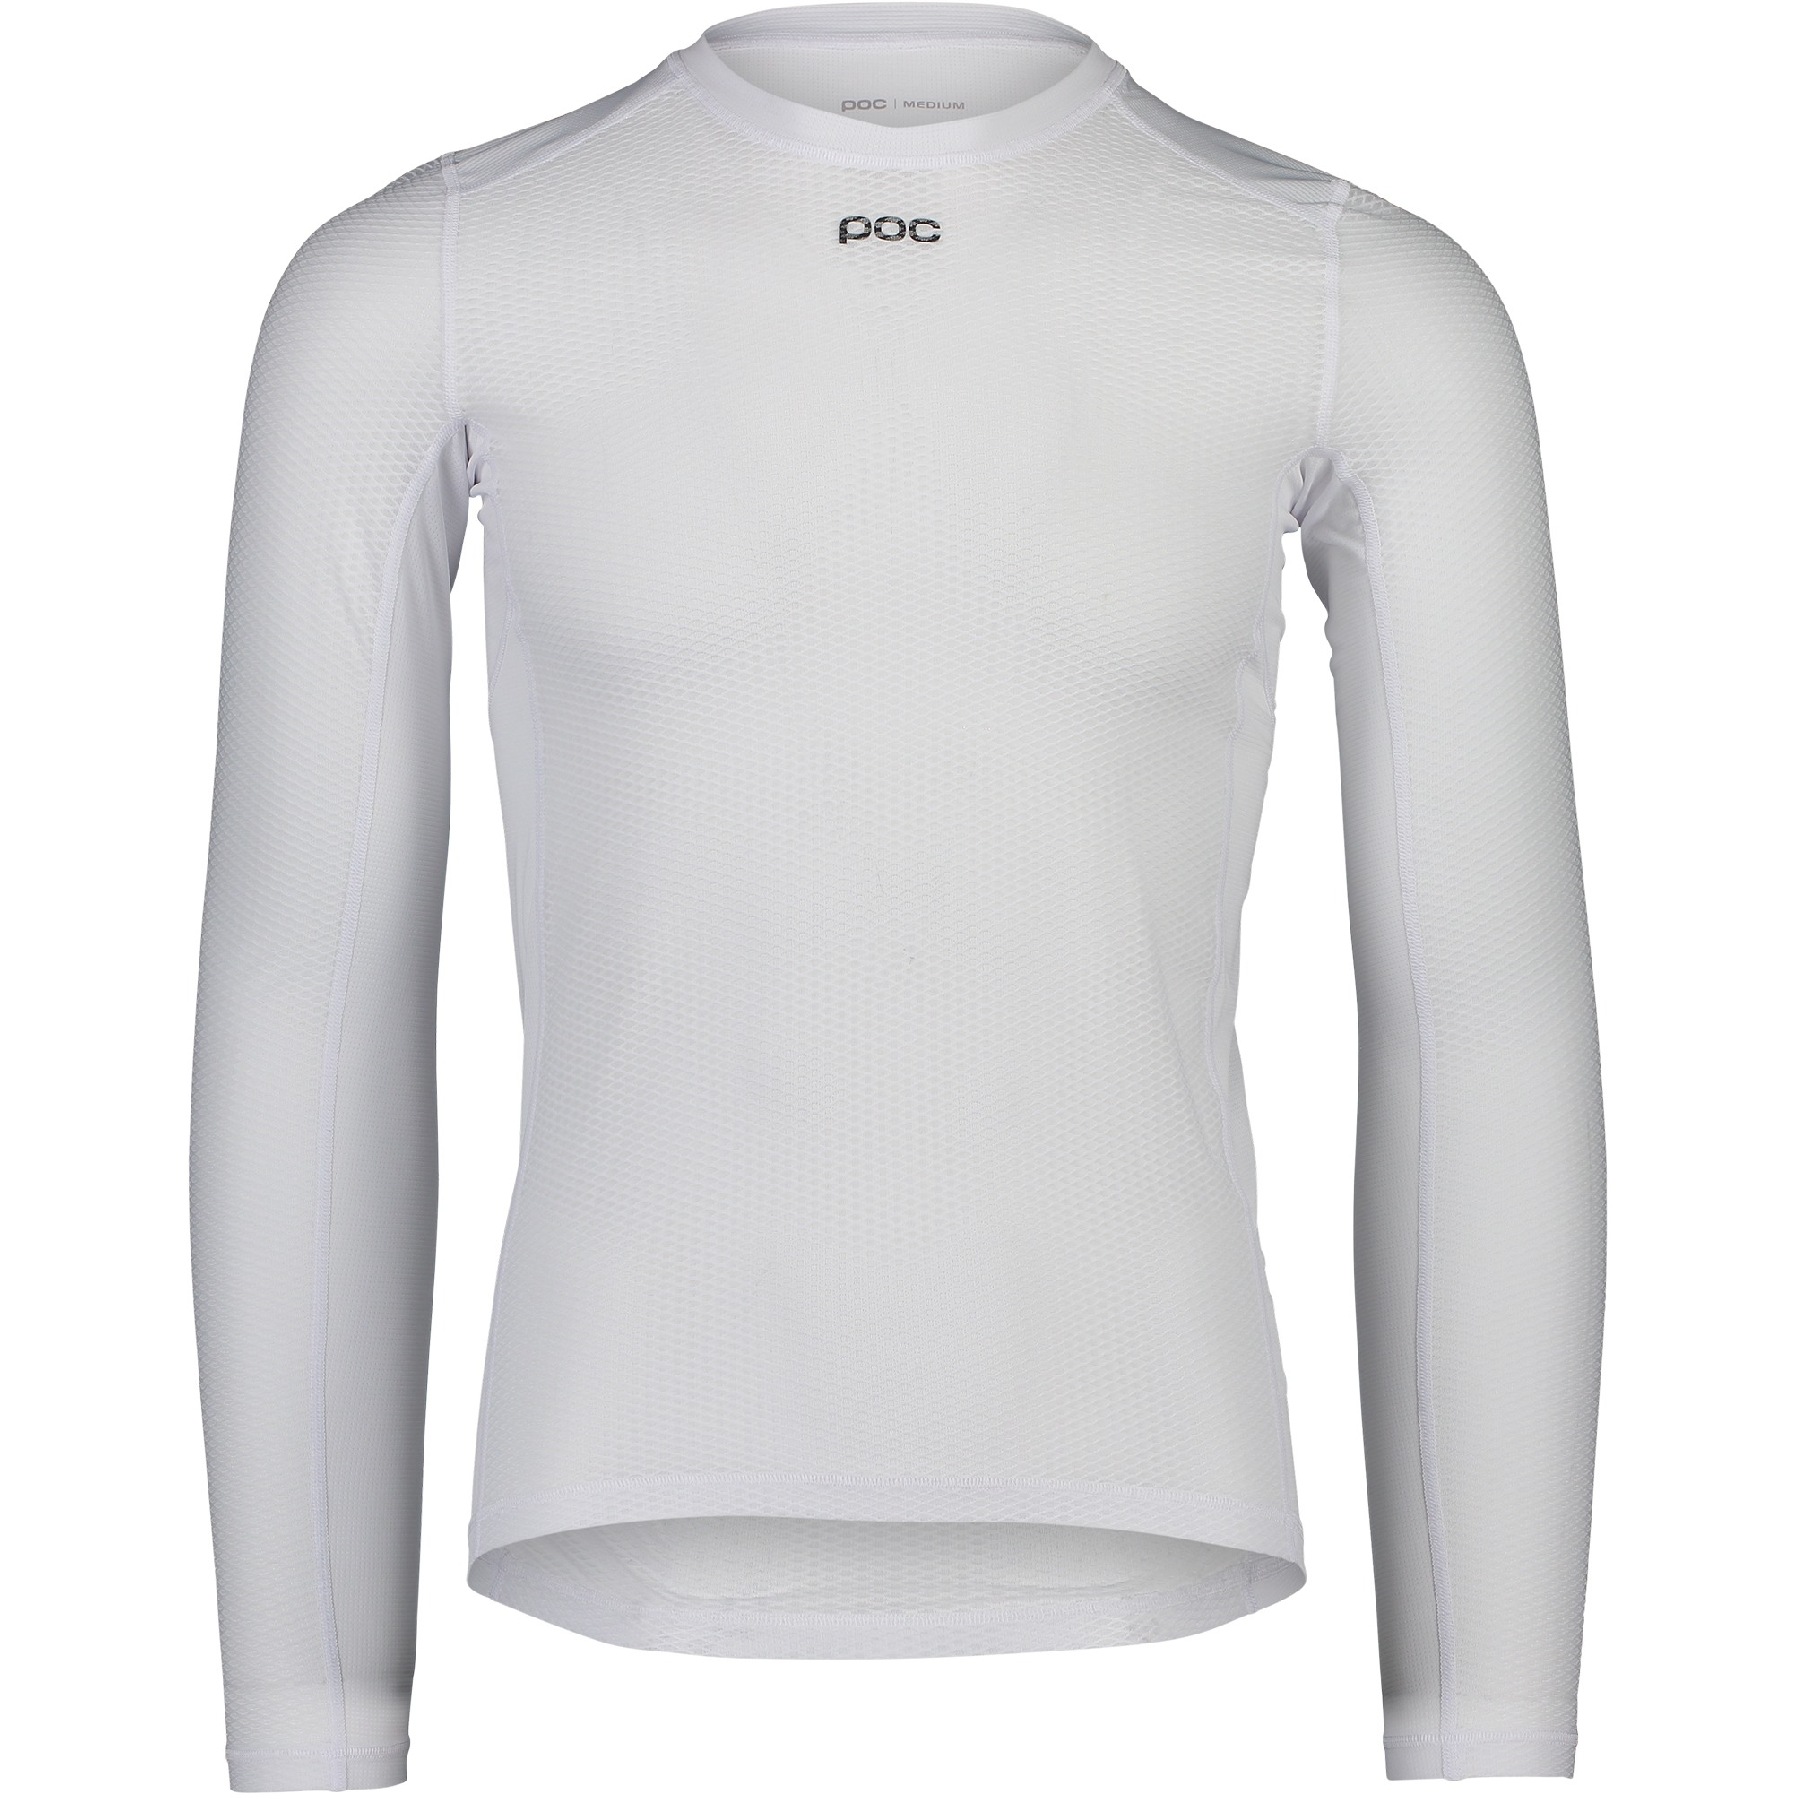 Produktbild von POC Essential Layer Langarm Jersey - 1001 Hydrogen White